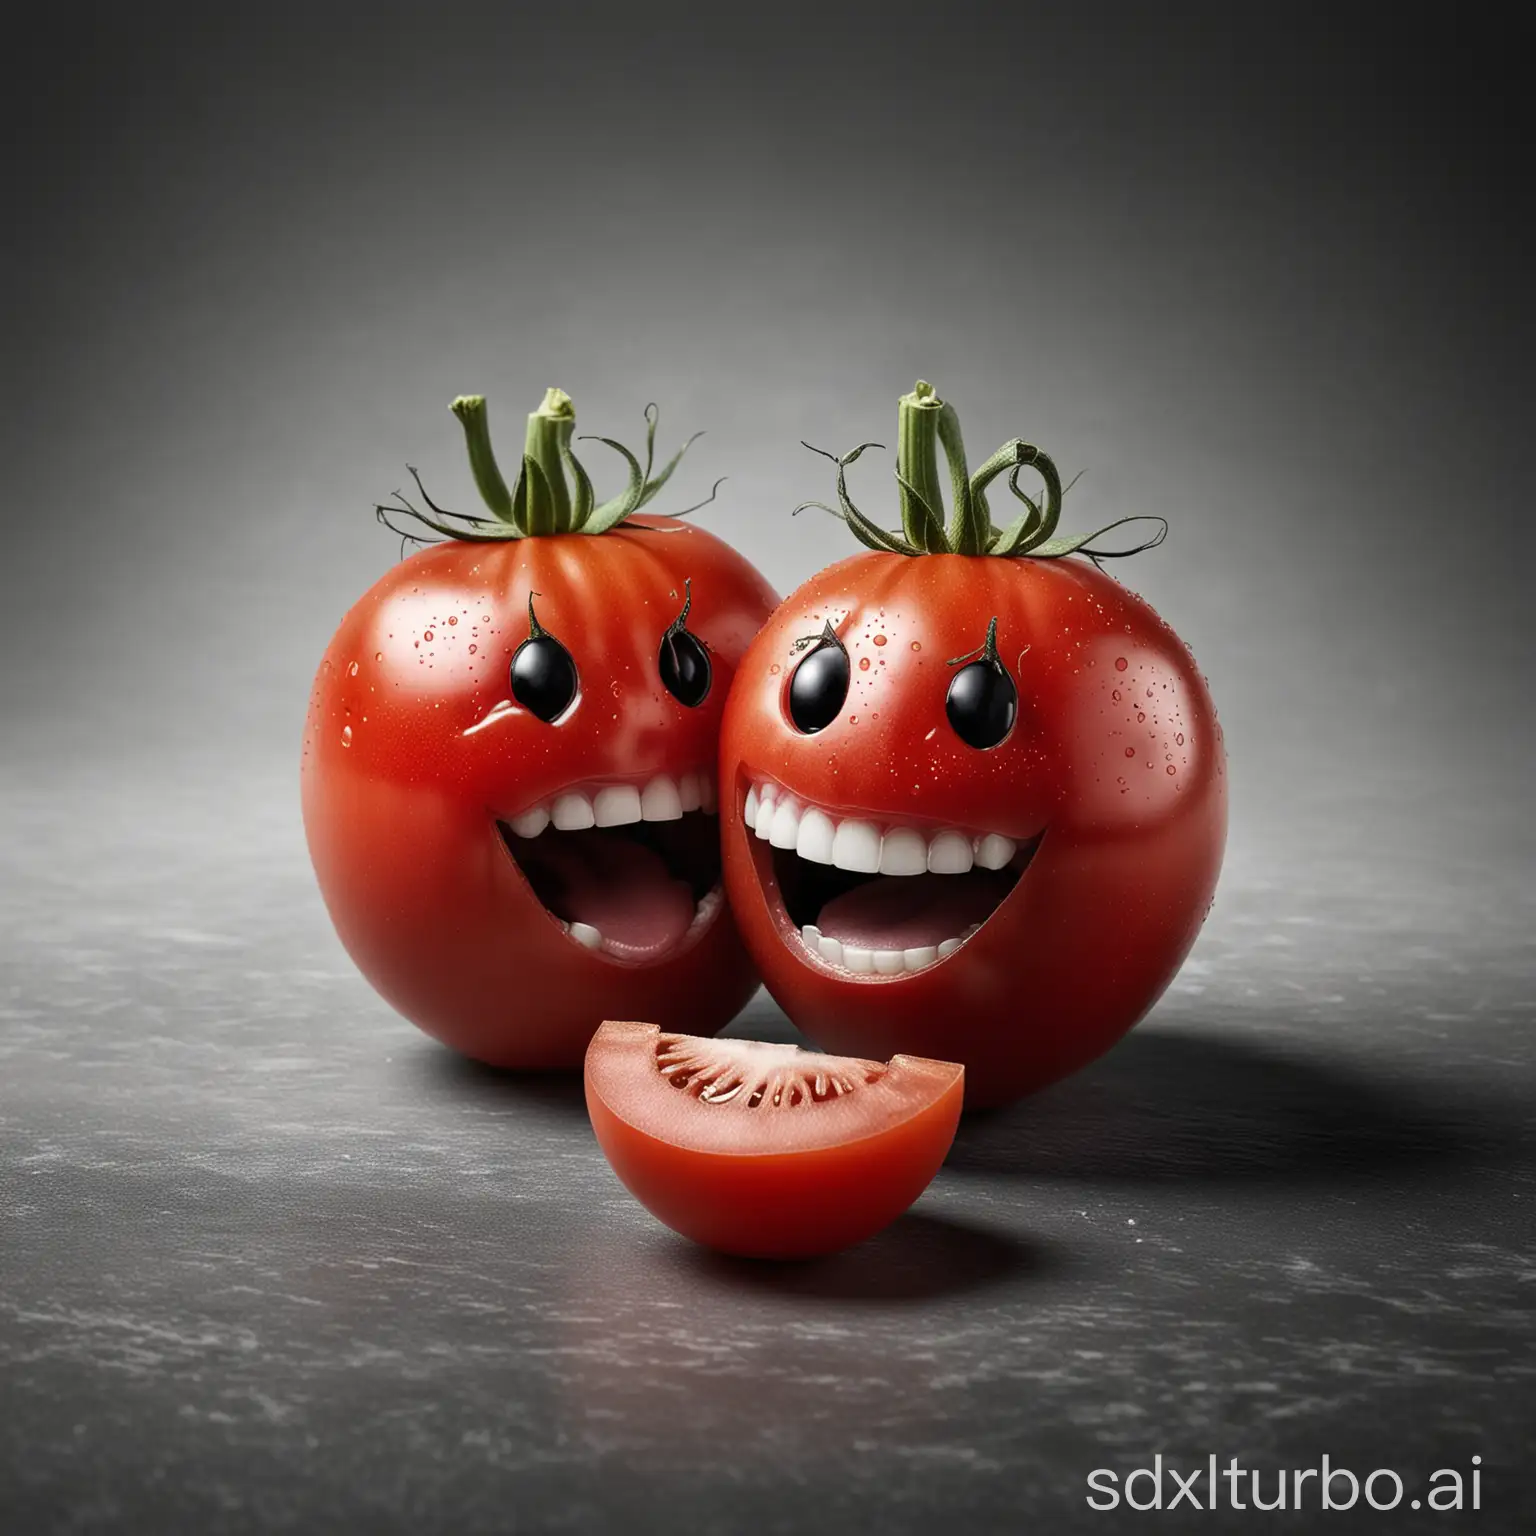 Foto hochauflösend, wo 2 rote Tomaten mit einem lachenden und einem weinenden Gesicht zu sehen sind. Der Hintergrund ist ein schwarz weißer Farbverlauf.